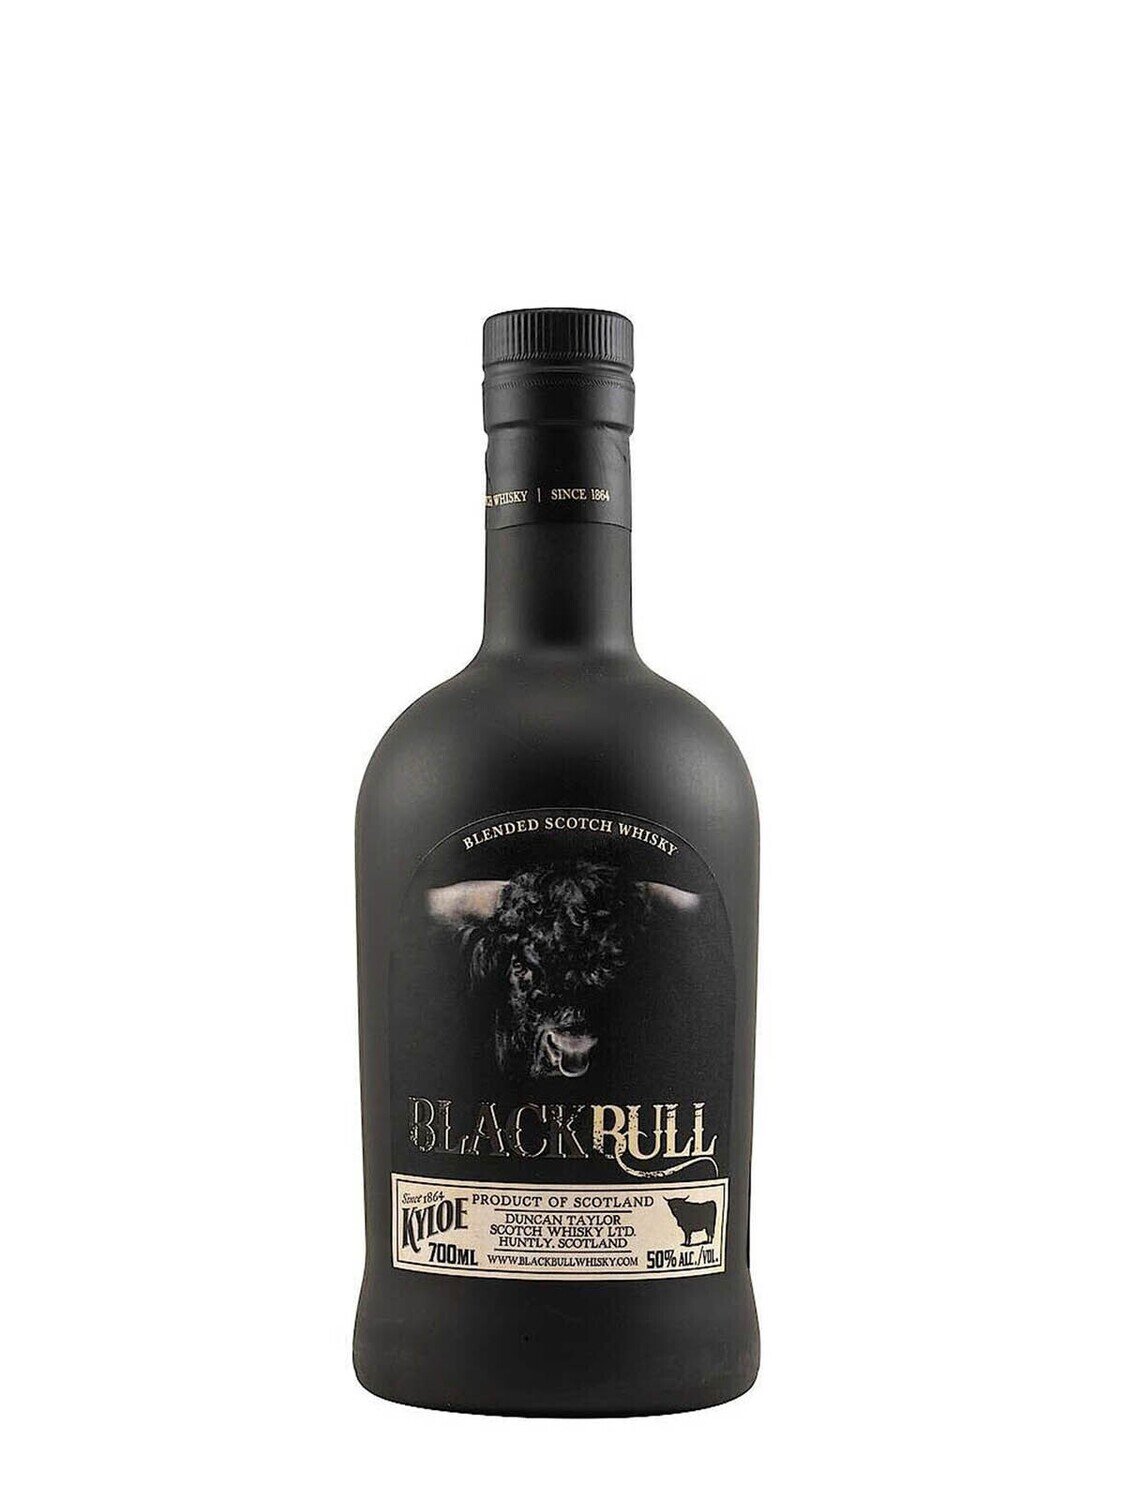 Black Bull Kyloe Blended Scotch Whisky 50% ABV 750mL